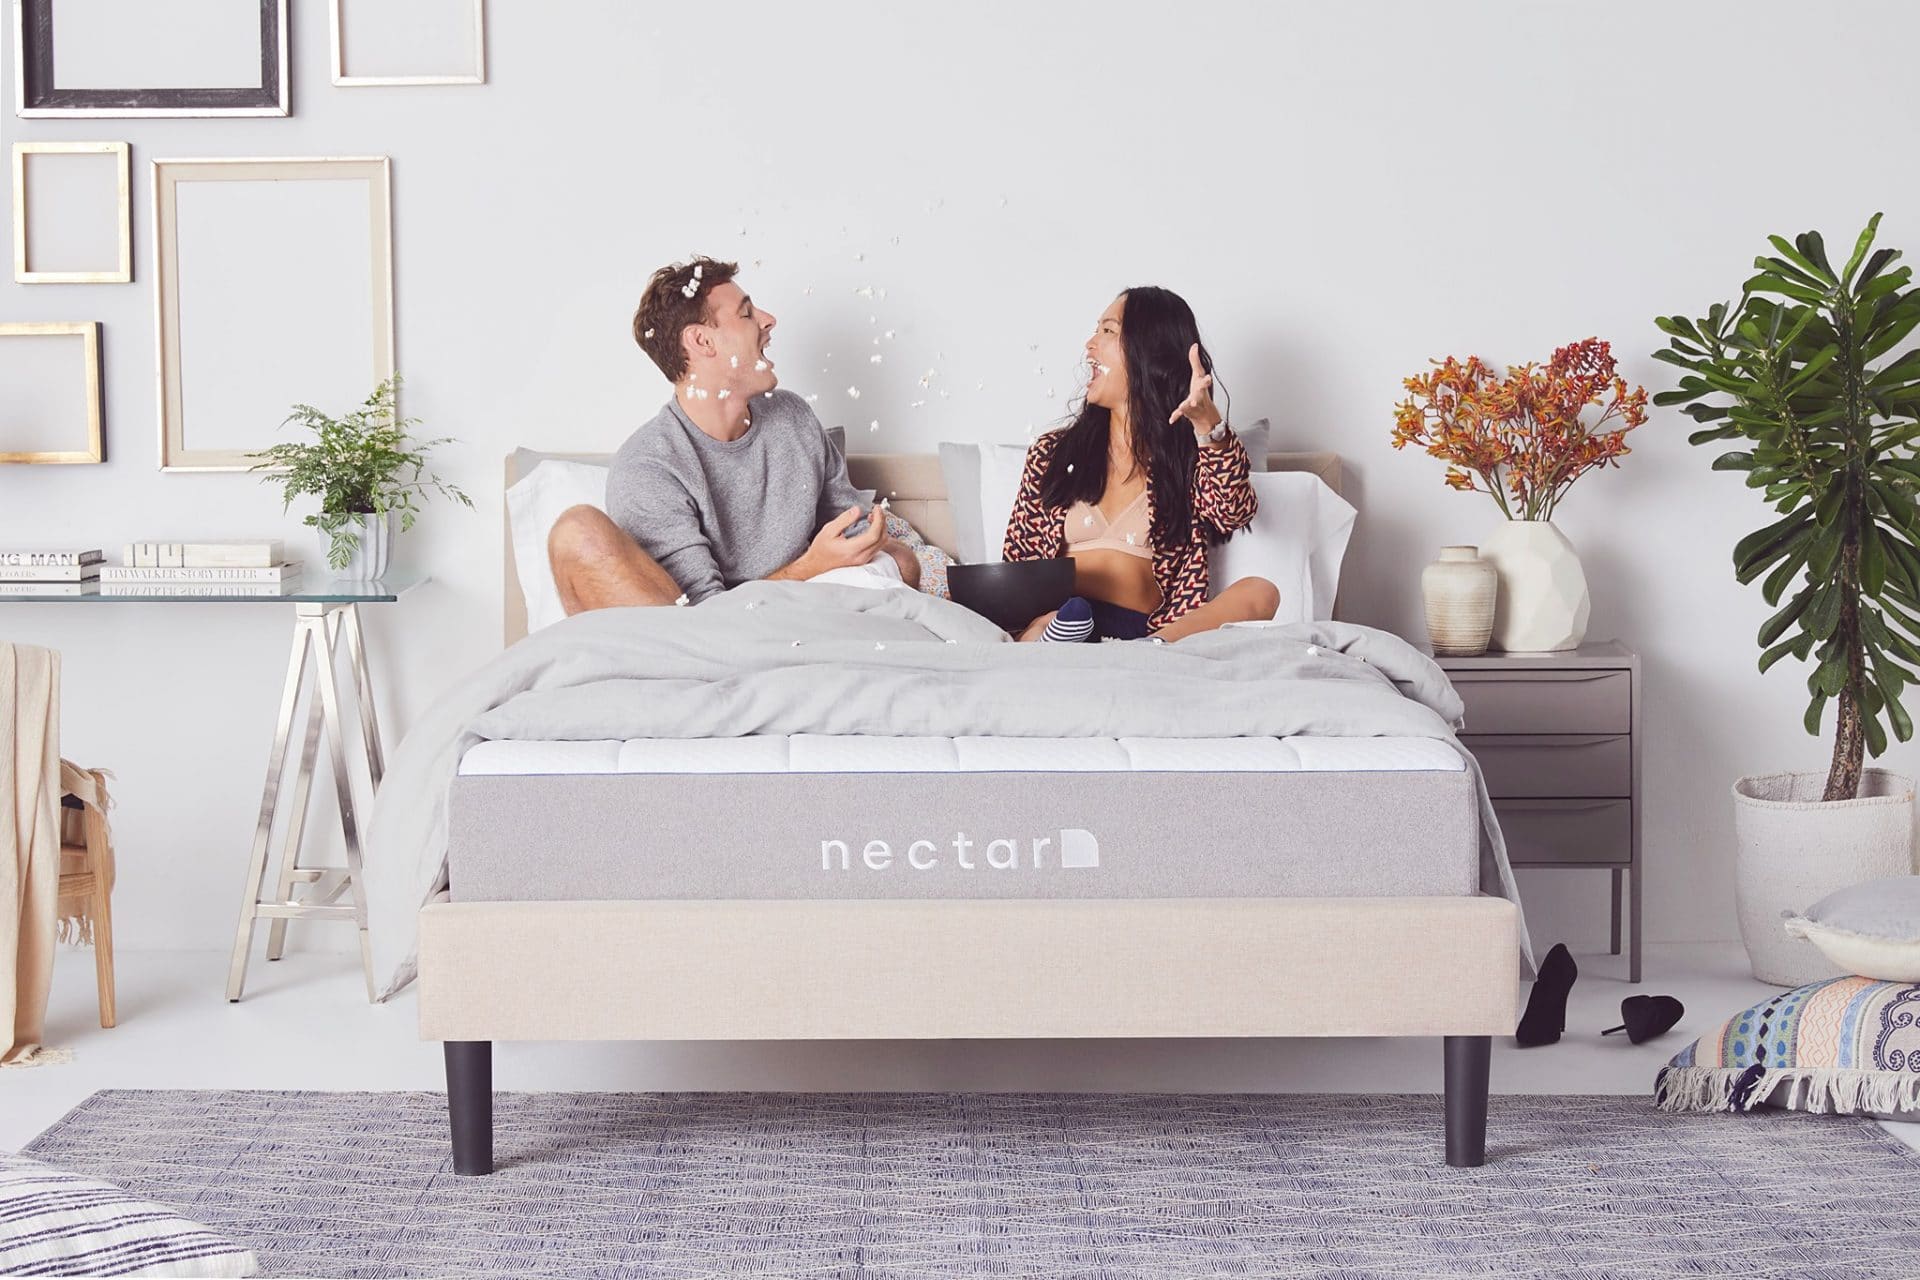 nectar mattress review 2020